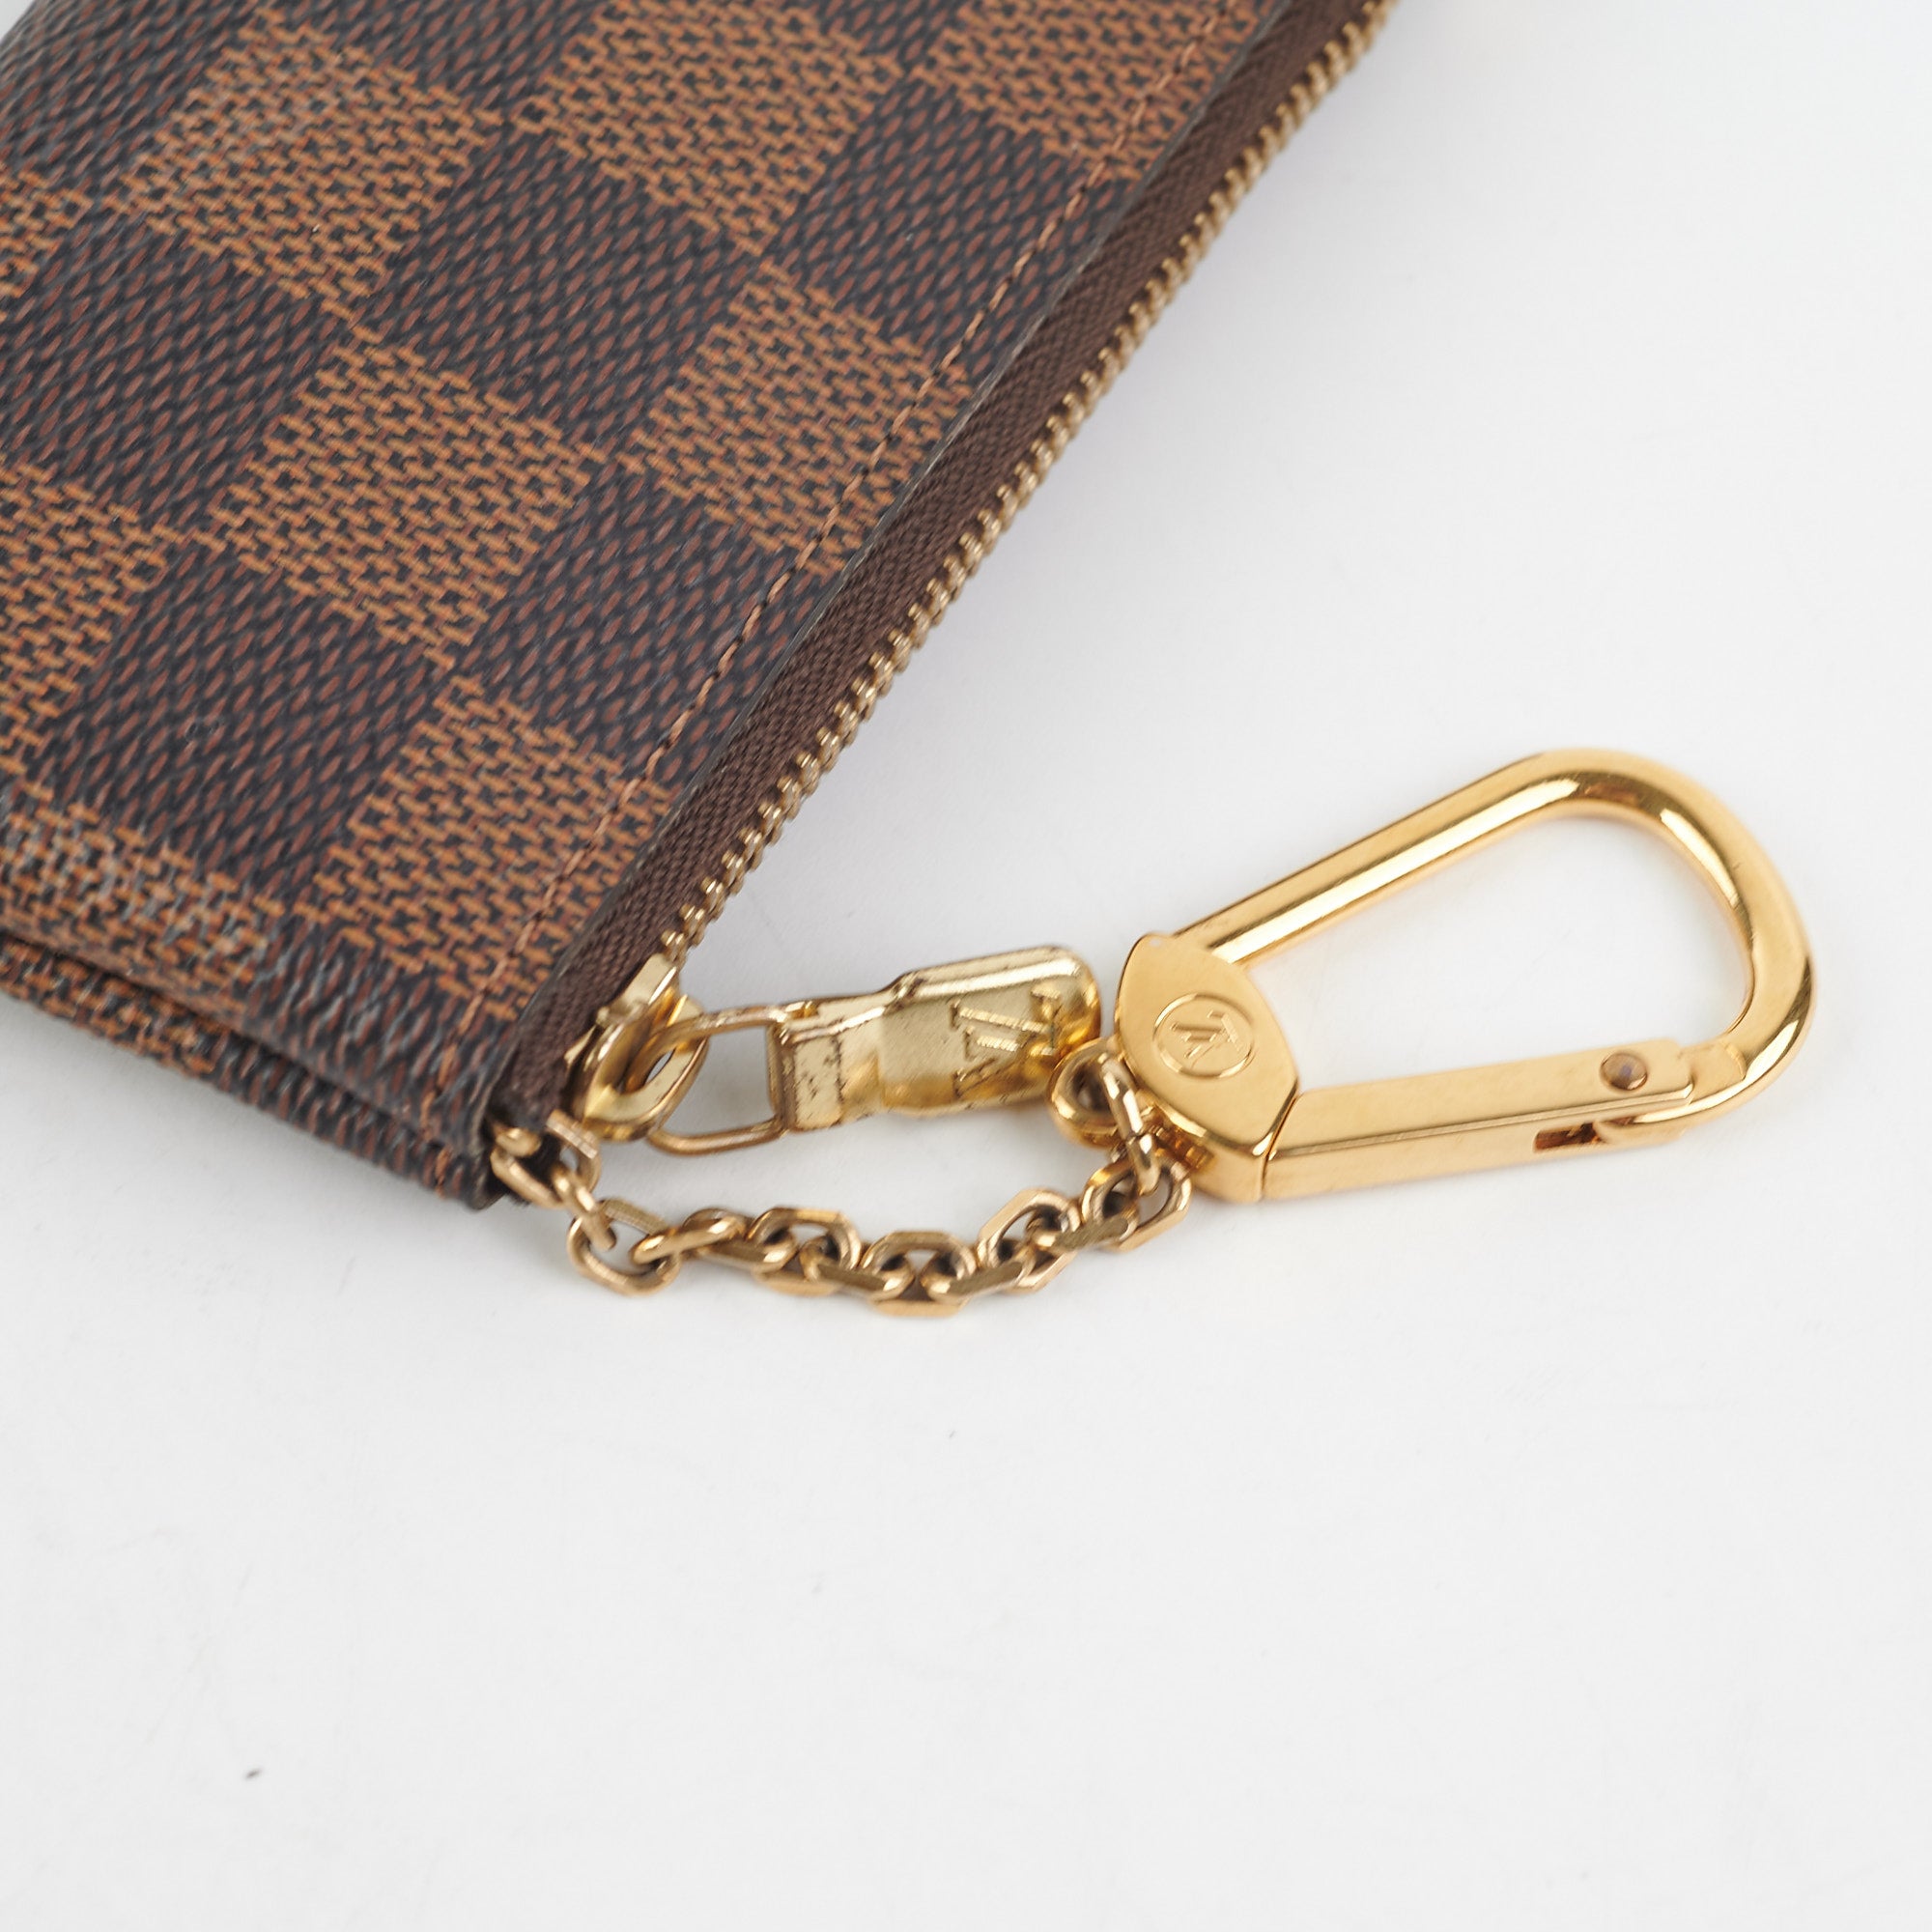 Shop Louis Vuitton Key Pouch (N62658, M62650, N62659) by Ravie